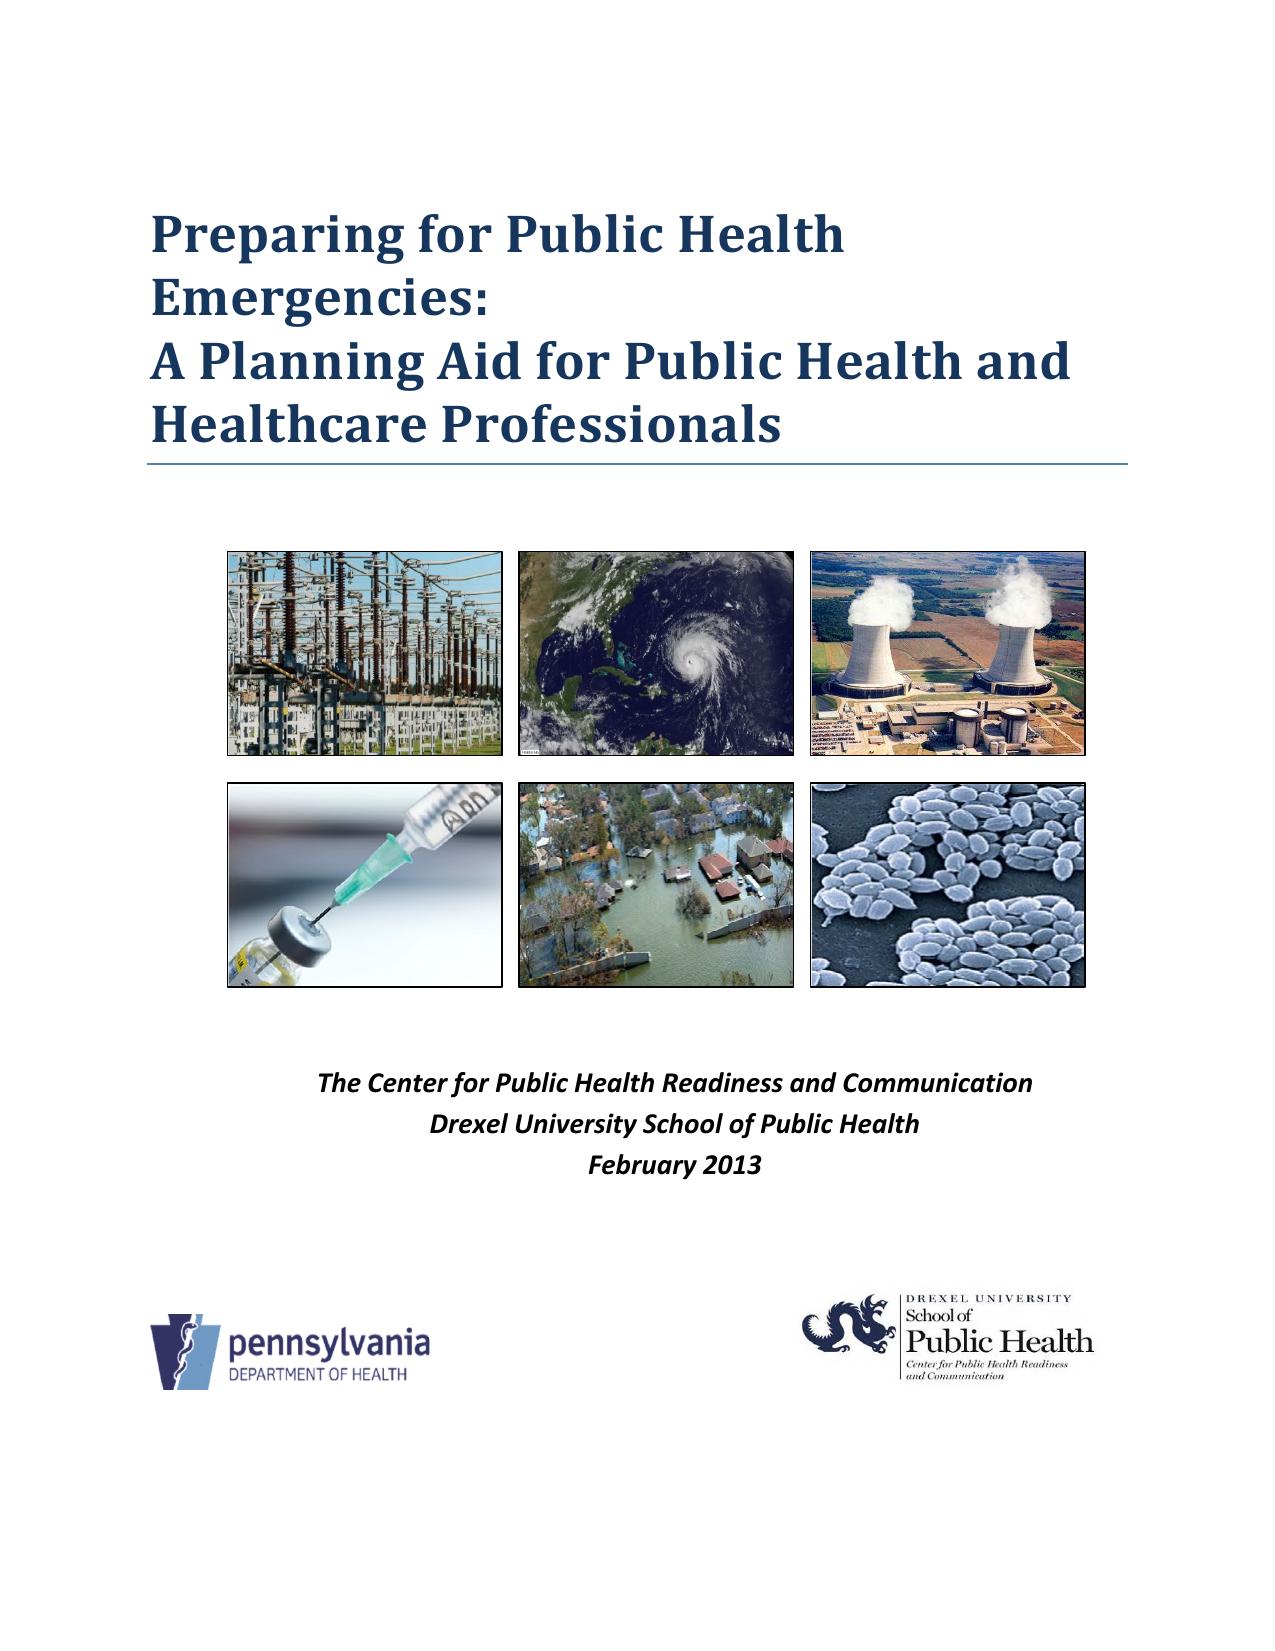 Preparing-for-Public-Health-Emergencies-A-Planning-Aid